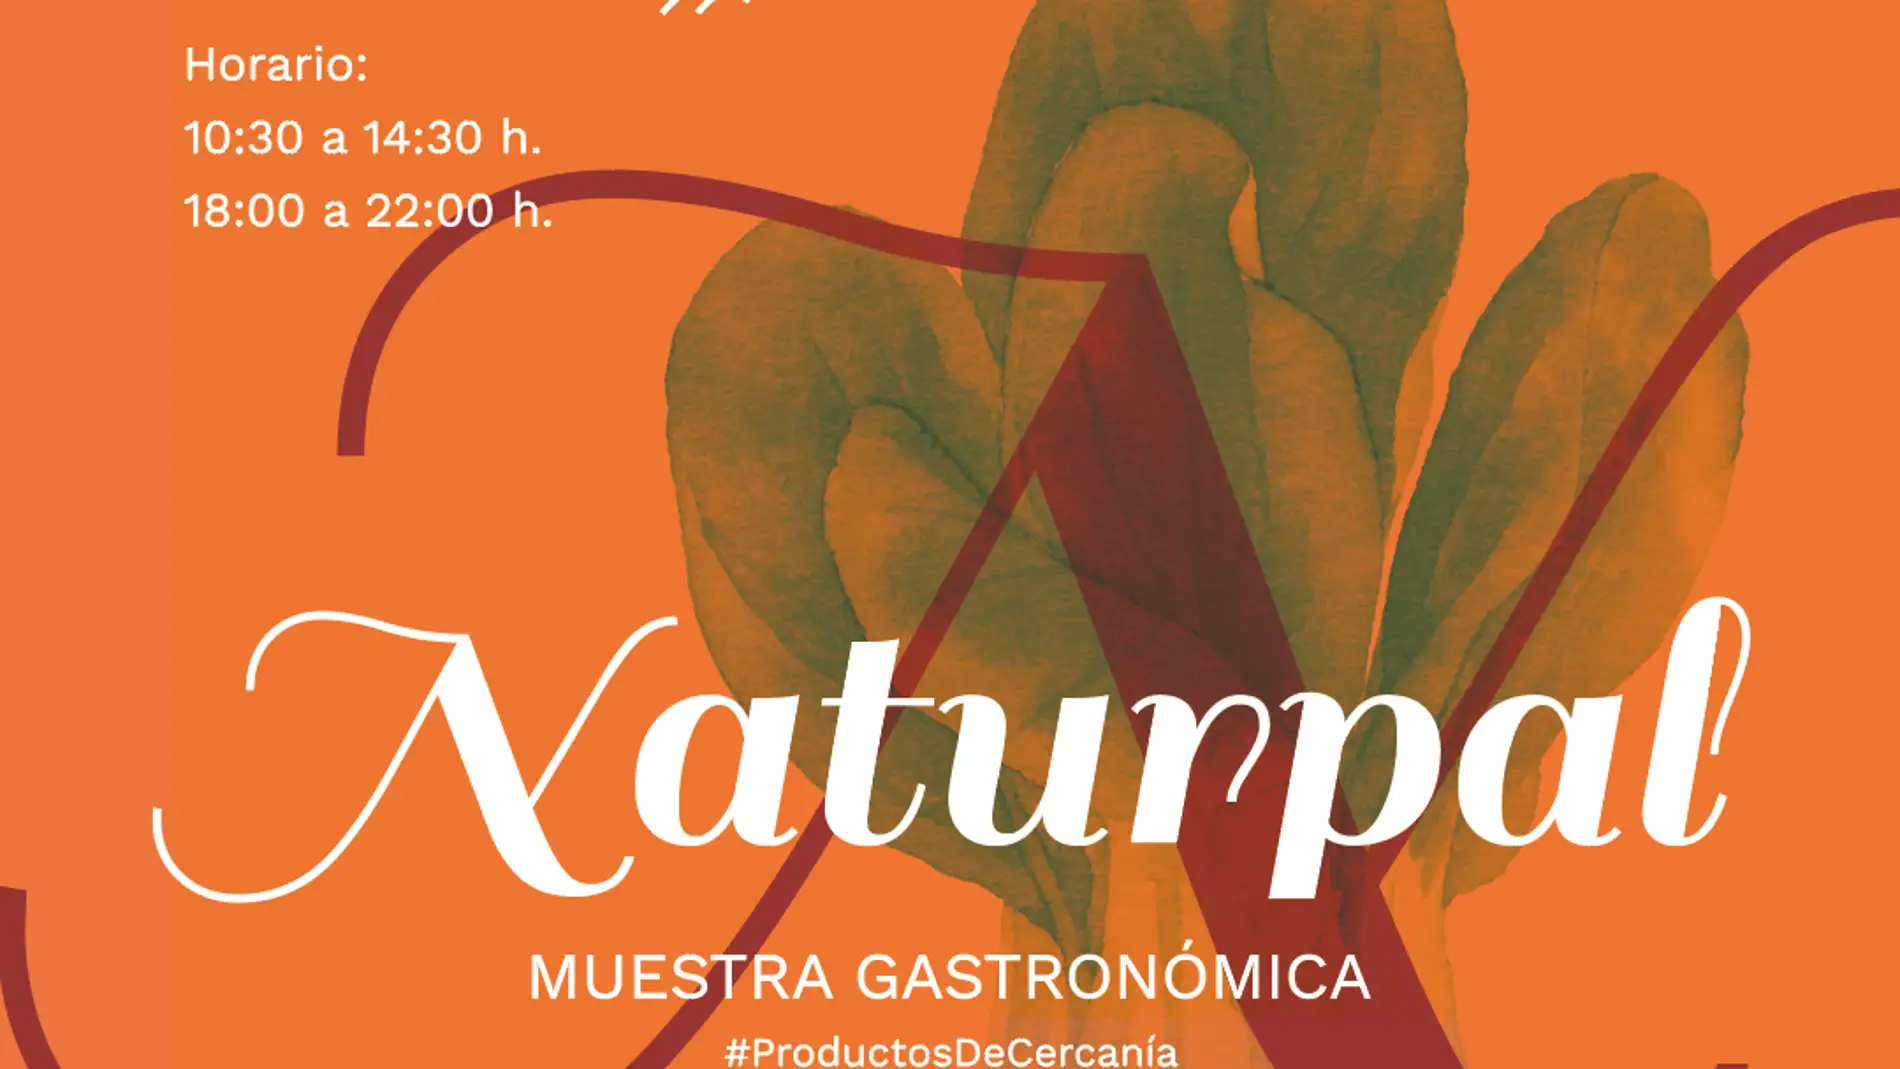 La muestra gastronómica NATURPAL estrena ubicación en el Paseo del Salón con 26 productores palentinos